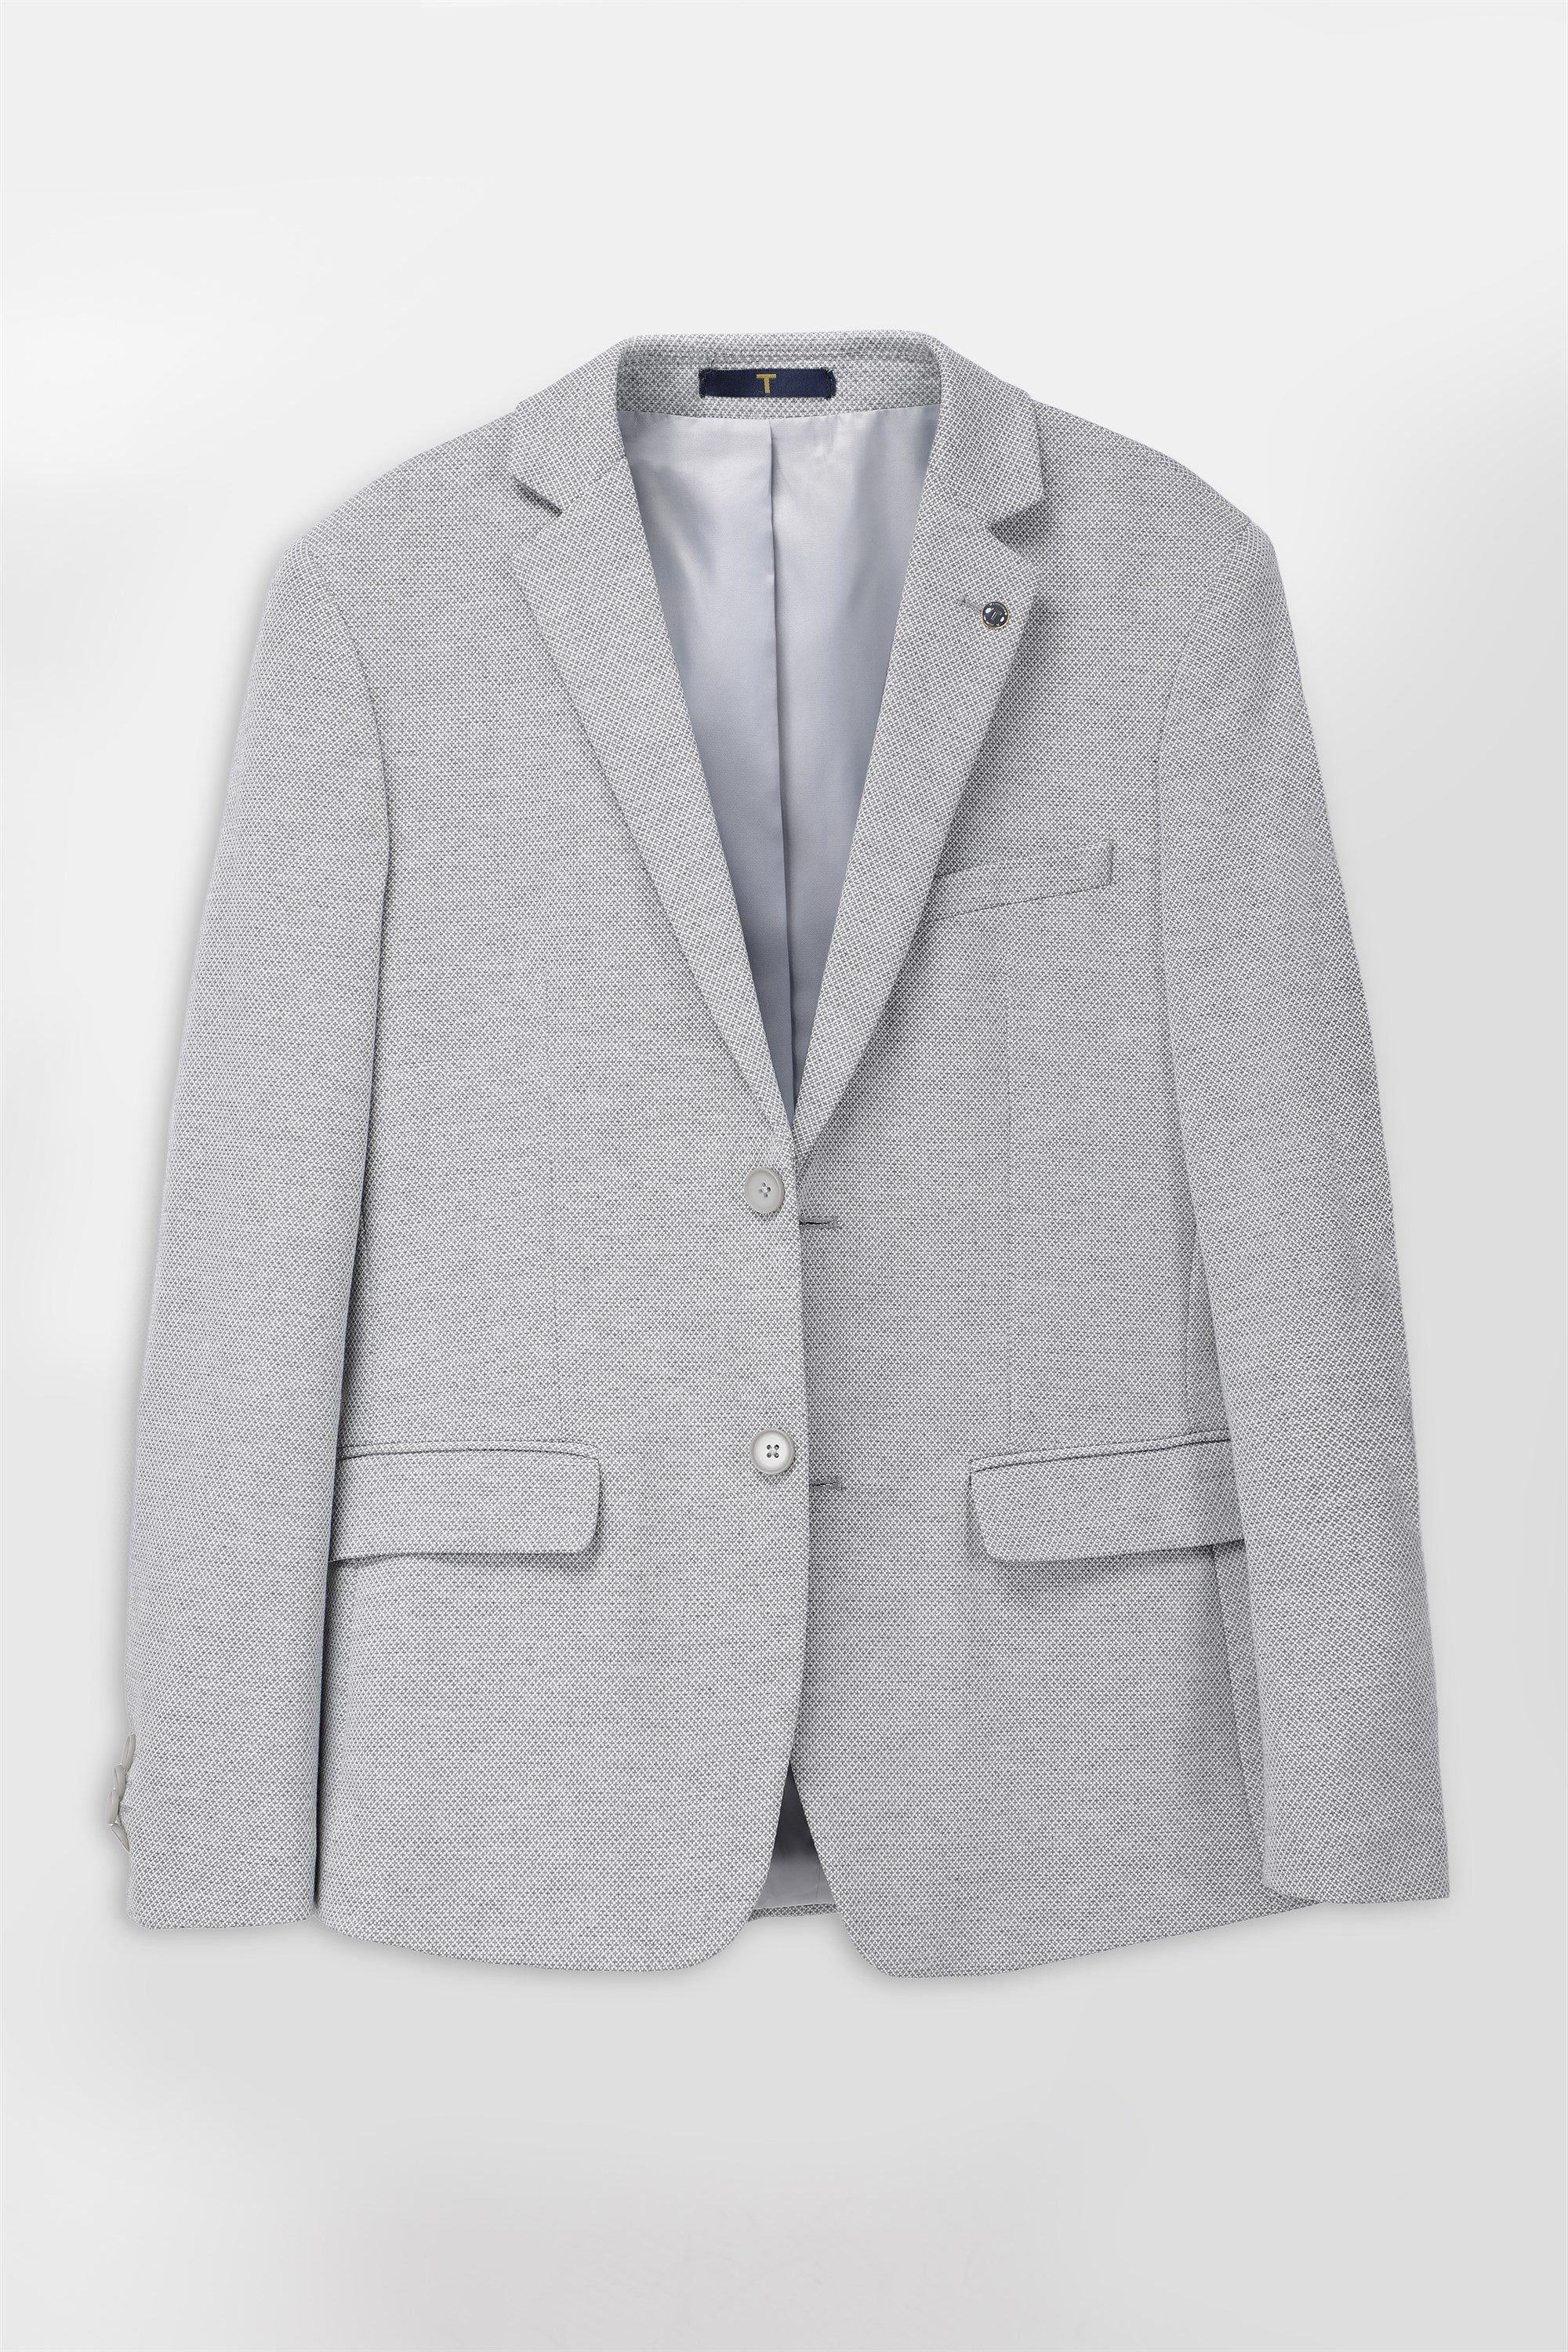 T the brand Slim Fit Knit Blazer - Grey